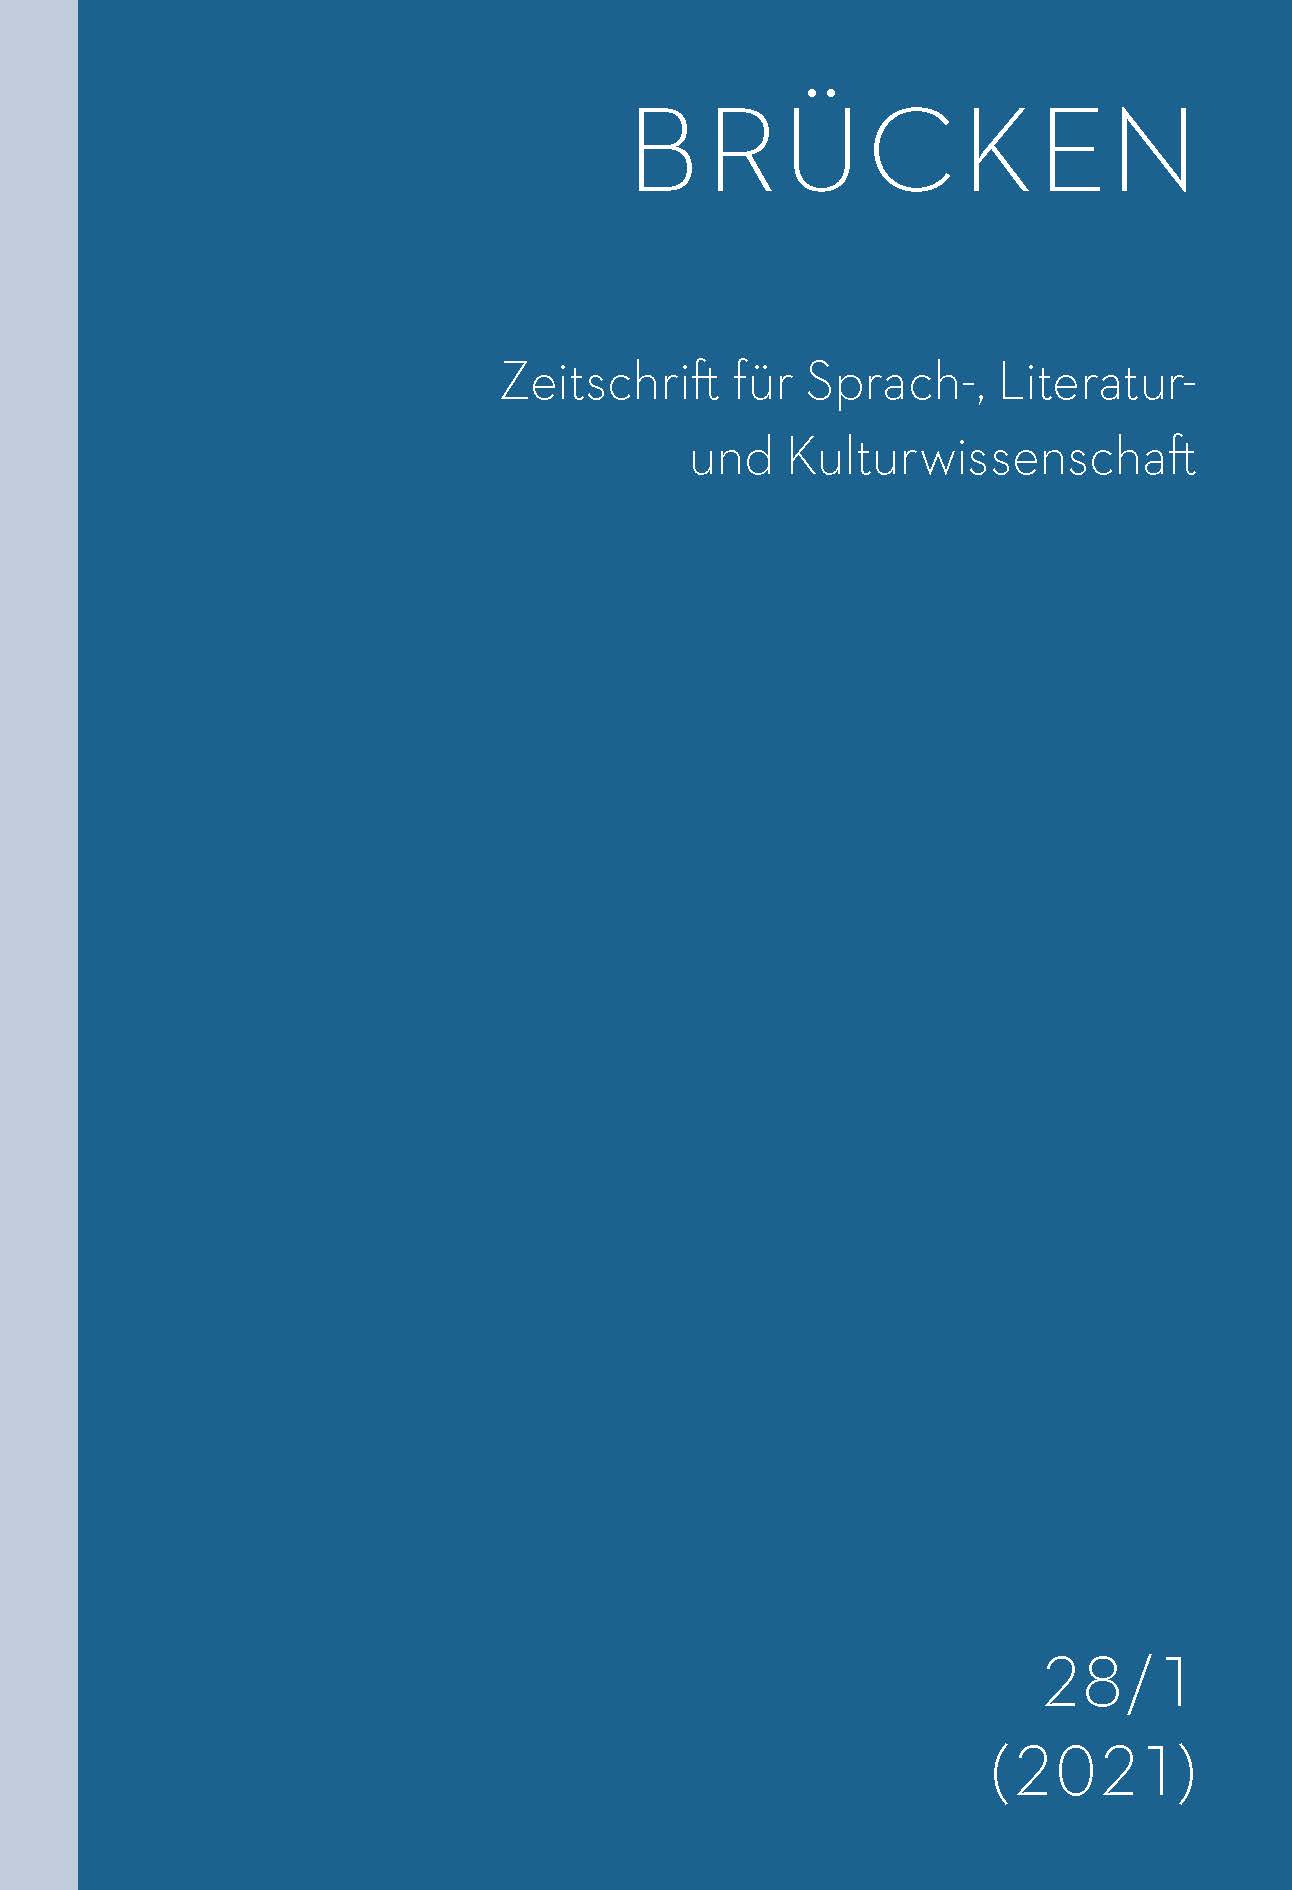 Die Zeitschrift für den Tschechischunterricht als Indikator der deutsch‑tschechischen Konfliktgemeinschaft